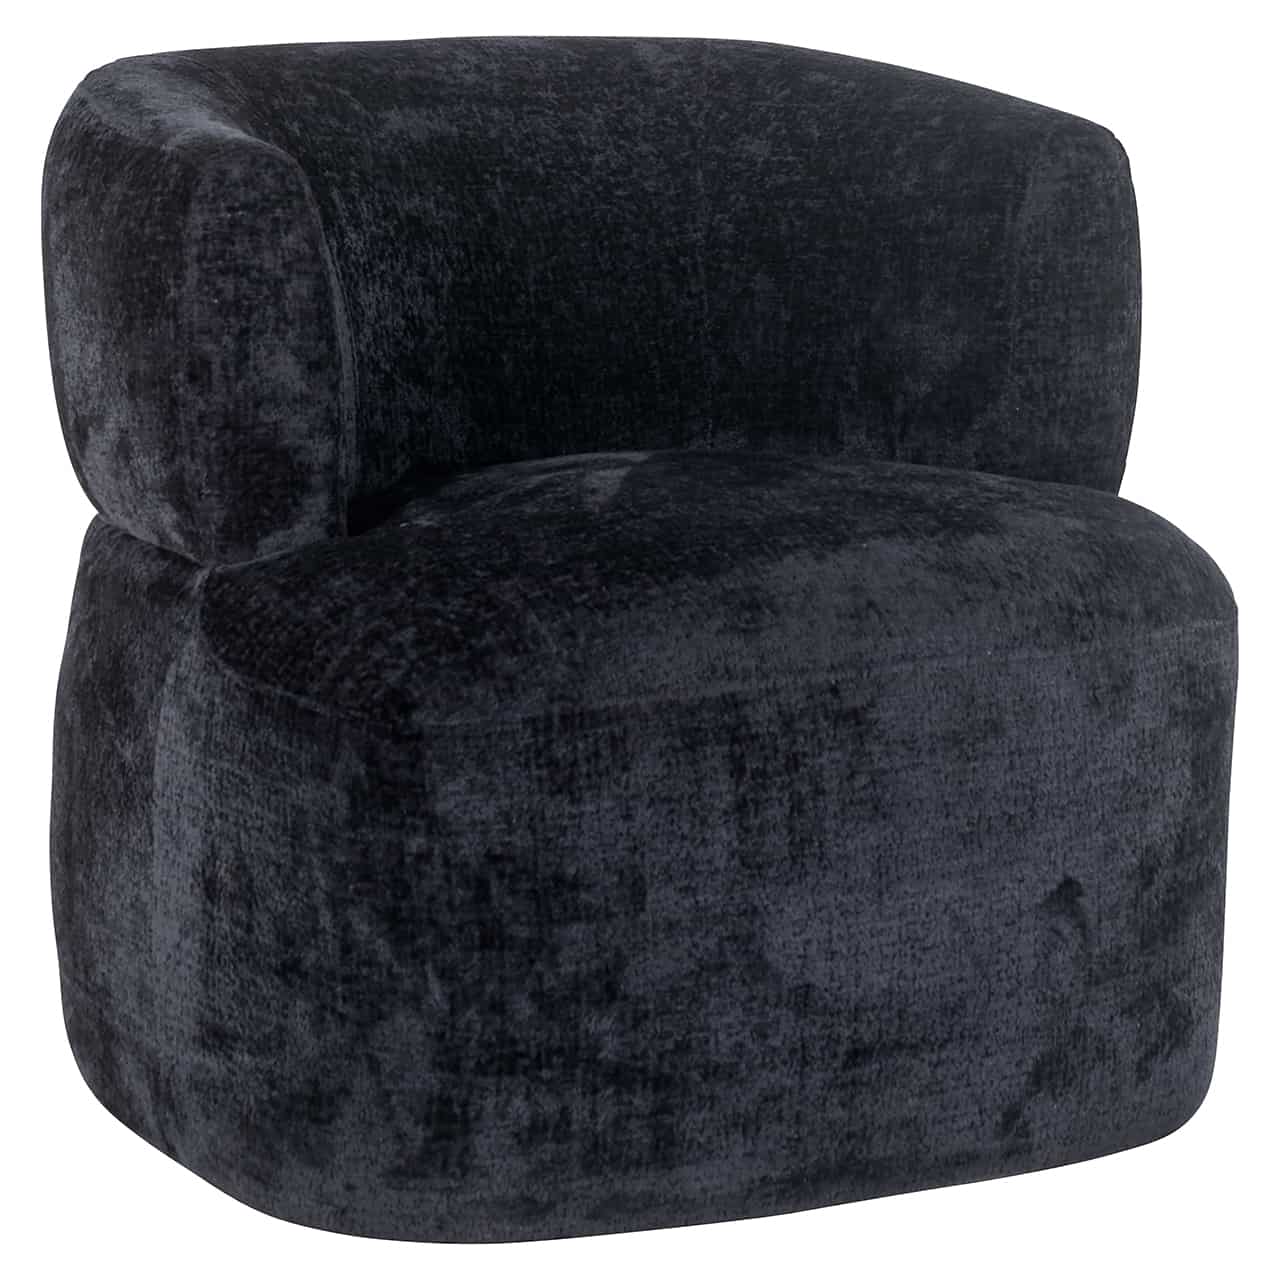 Moderner Sessel, bezogen mit schwarzer Chenille; auf einem dicken Polster eine ebenso dicke, halbrunde, durchlaufende Lehne.